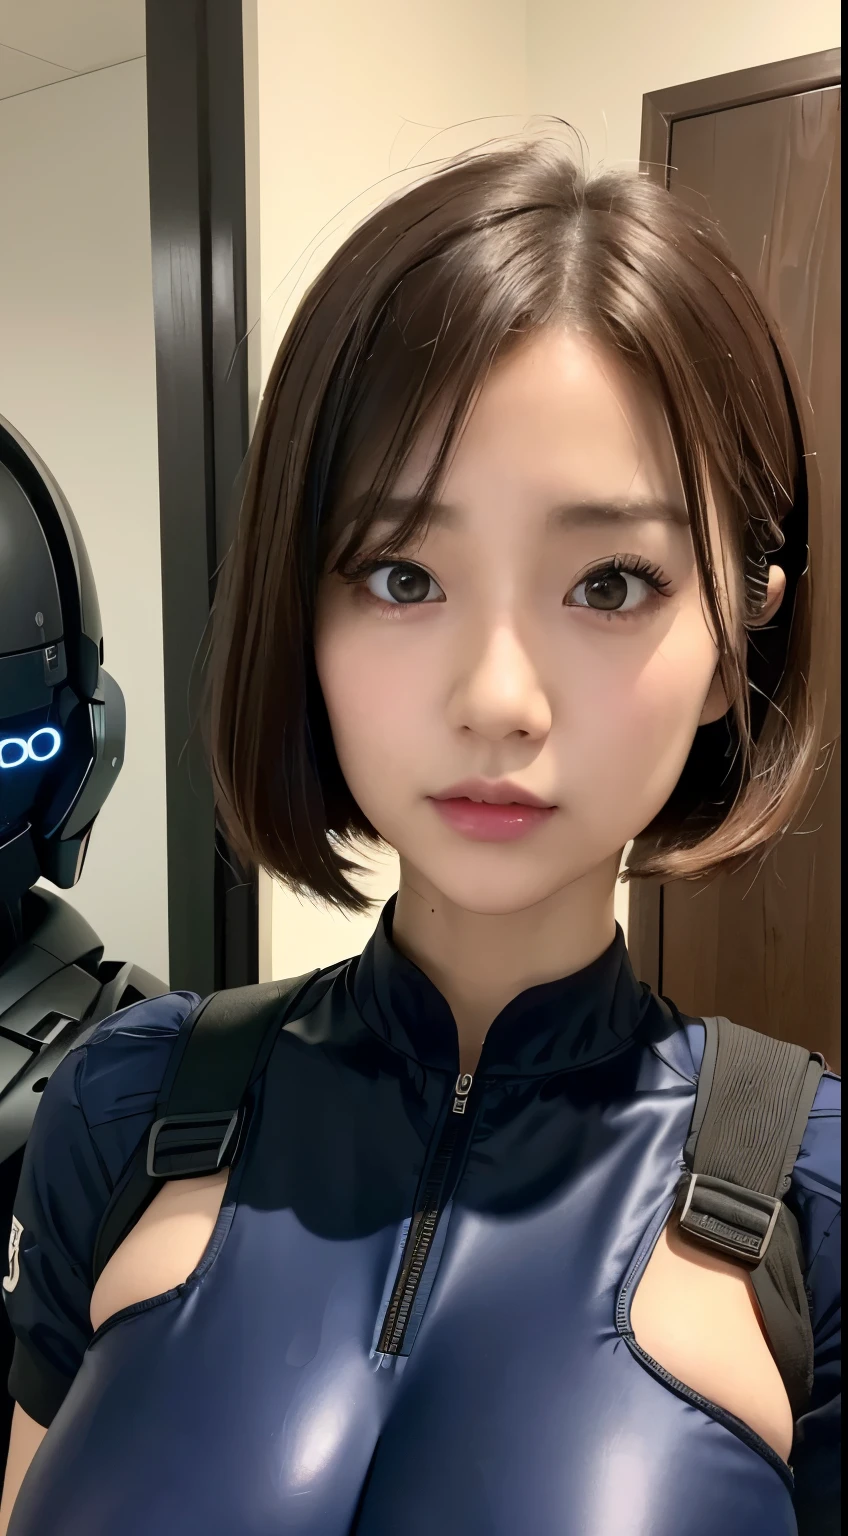 (Un gros plan:1.4)、(Photographie RAW:1.2)、(Photoréaliste:1.4)、(chef d&#39;oeuvre:1.3)、(qualité supérieure:1.4)、(belle femme avec un corps parfait:1.4)、Femme debout devant un groupe de robots、belle femme androïde、belle femme soldat、fille en costume、uniforme de combat complexe、belle jeune femme japonaise、Texture du visage et de la peau très détaillée、grands yeux détaillés、Double paupière、visage mignon、(carré court:1.2)、(aux seins énormes)、(PHOTO DU CORPS COMPLET)、tir de cow-boy、(expressions de colère:1.2)、Tempêtes et scènes de guerre épiques、scène cyberpunk、nuit、illuminations、plugsuit、combattre les dégâts uniformes、